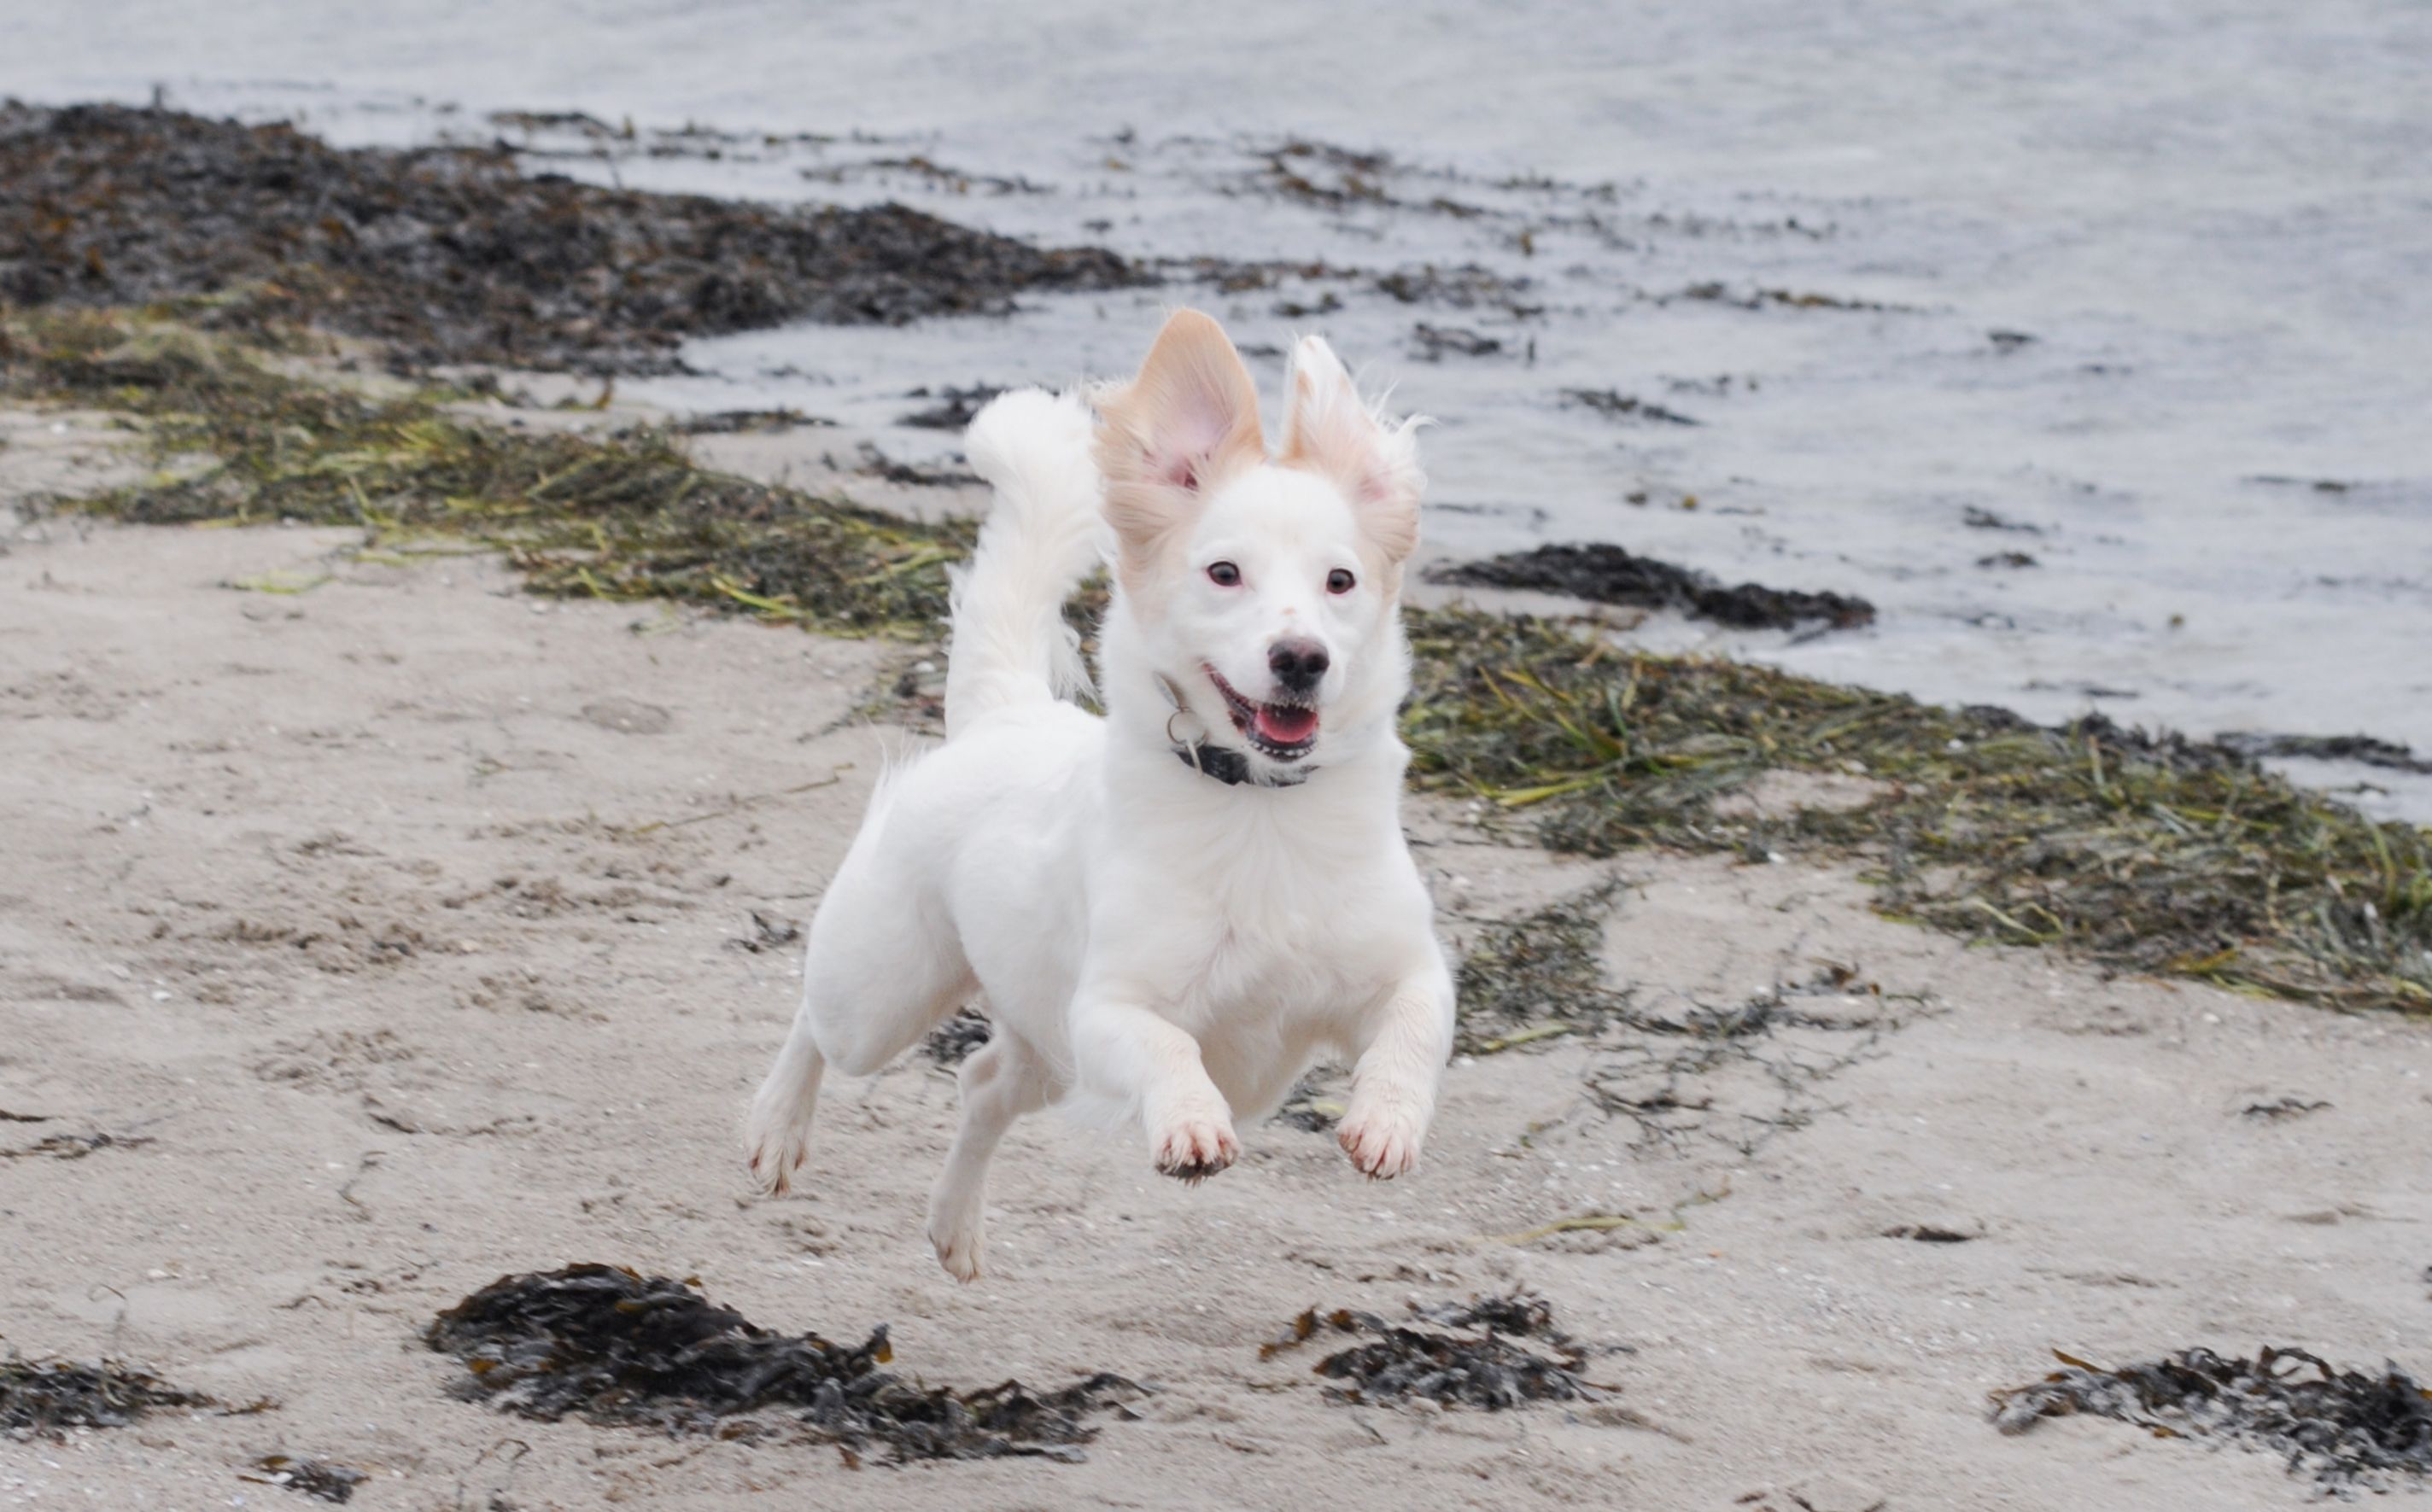 Køre ud erstatte miles Hundeejere: Godt nyt til jeres strandglade ven | Dyrenes Beskyttelse